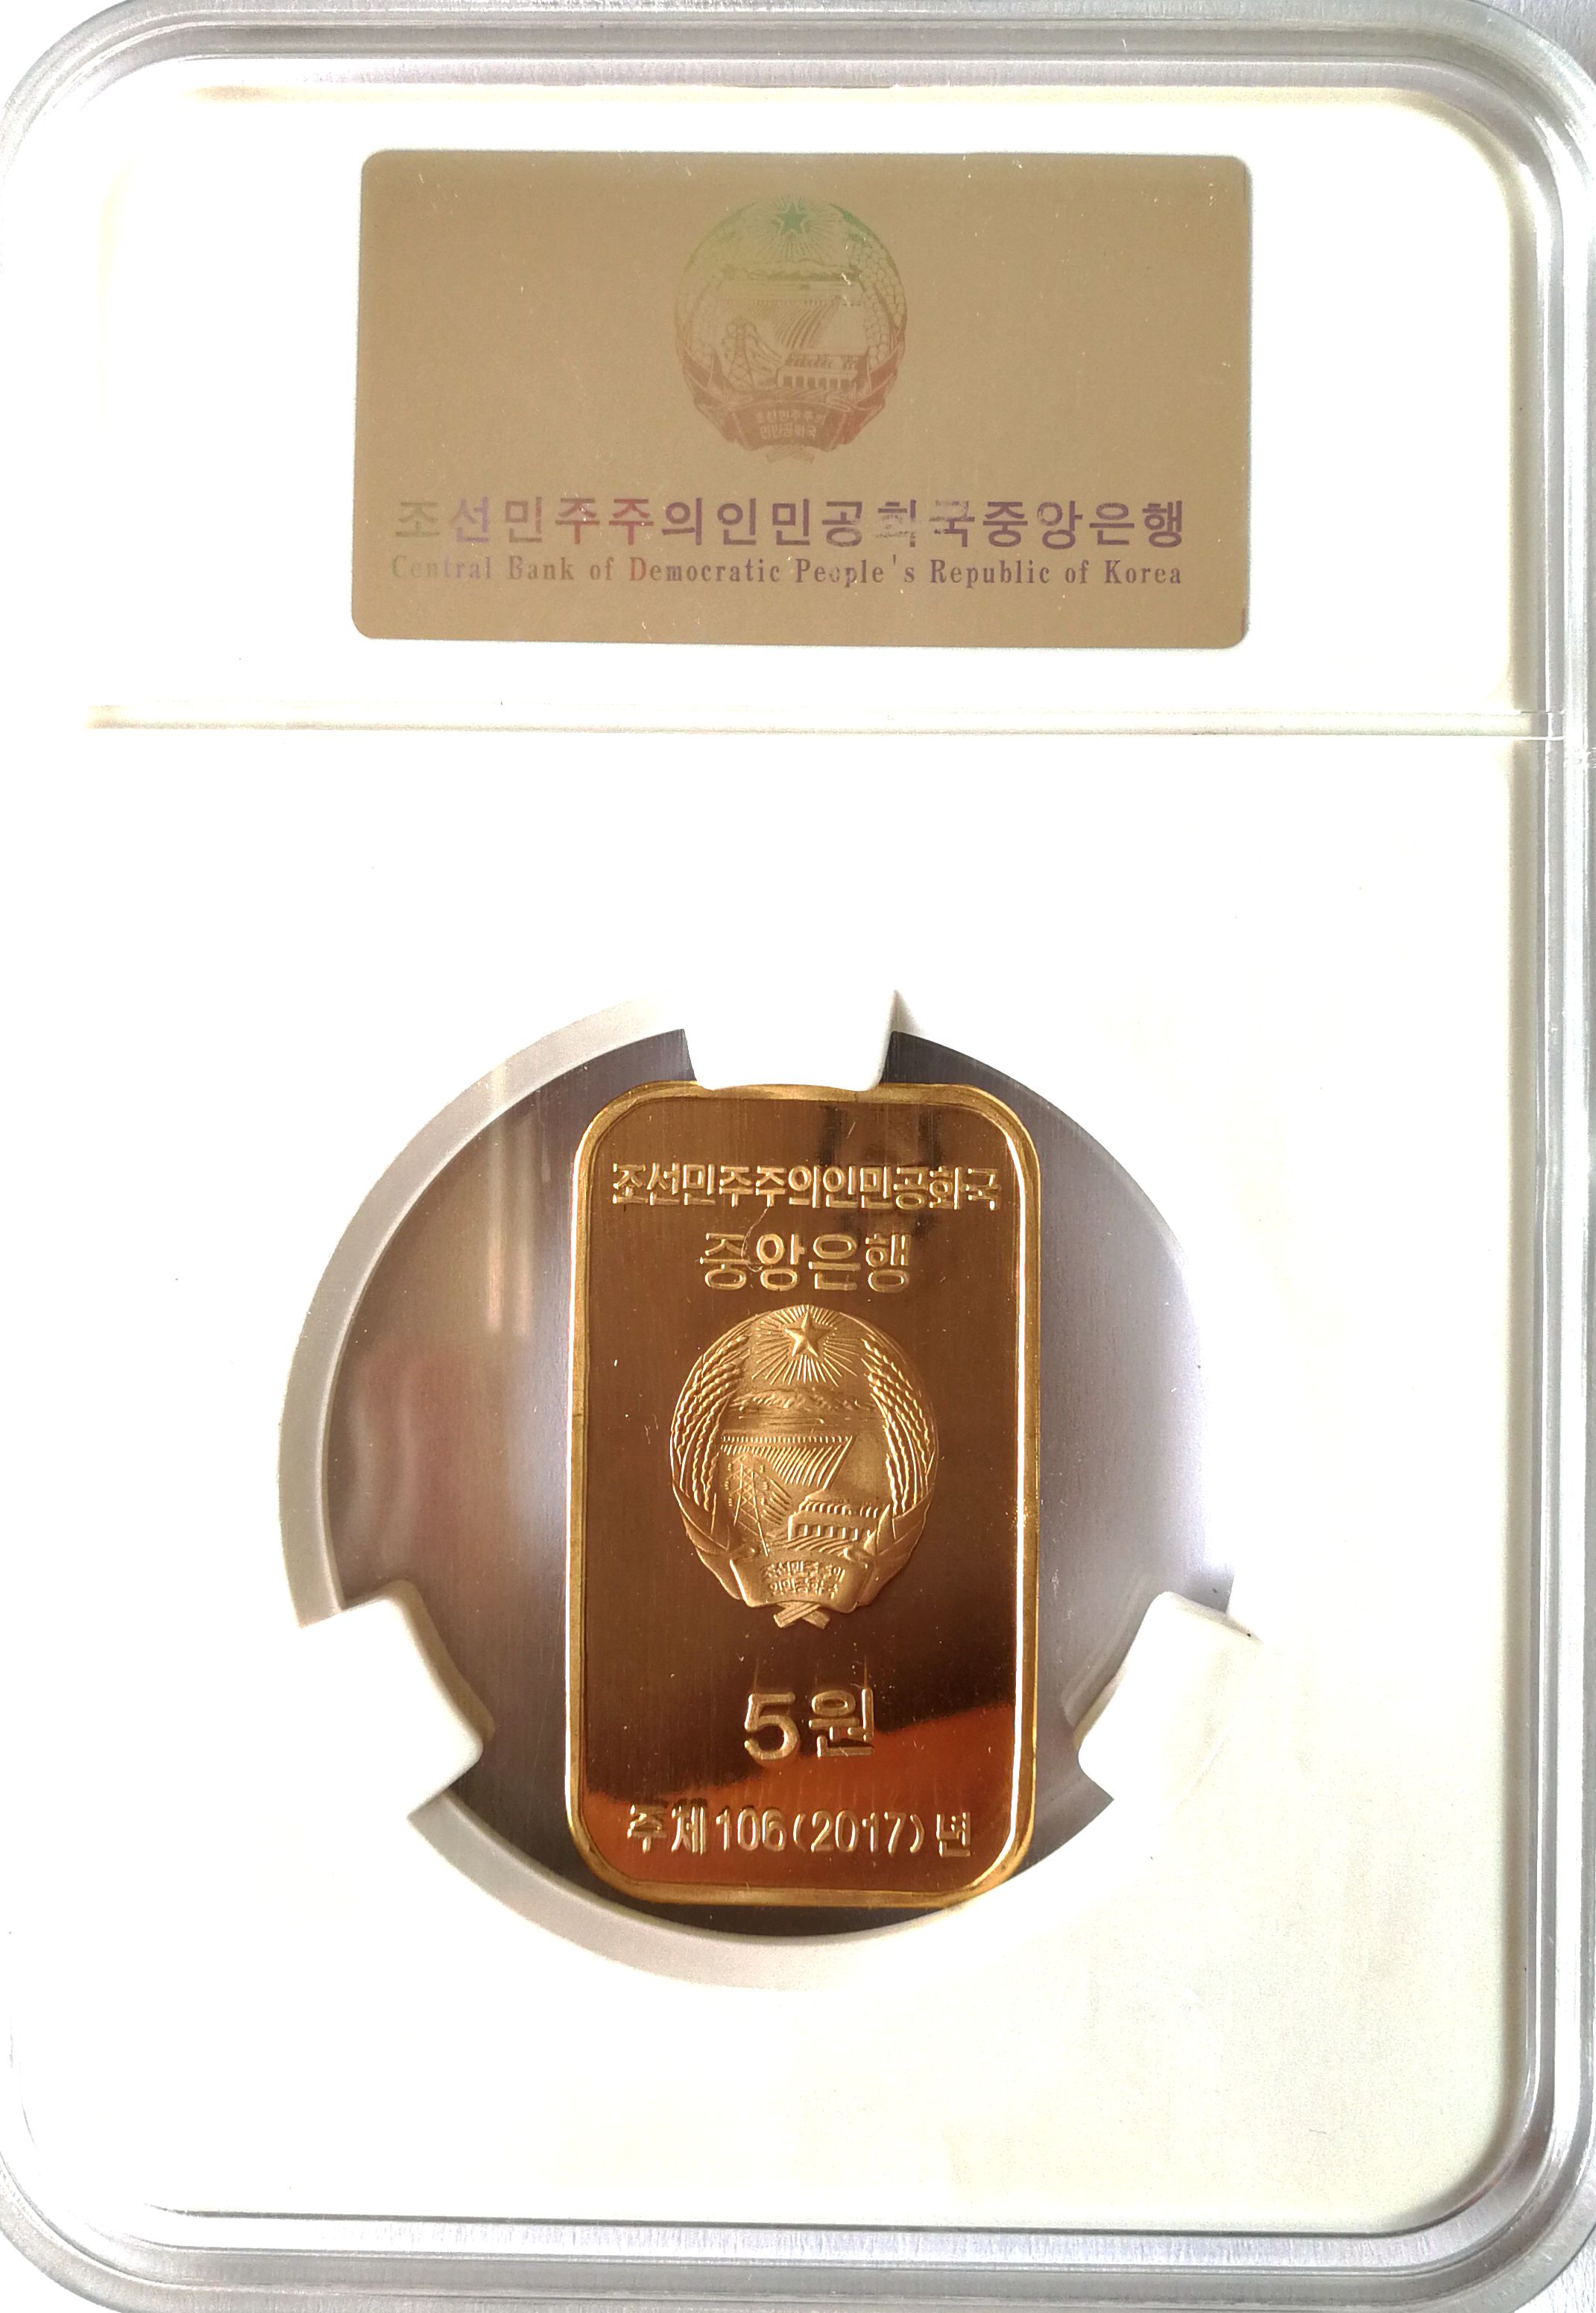 L3366, Korea Rectangle Coin, "Korean Tiger Map", 2017 Korean Grade Box